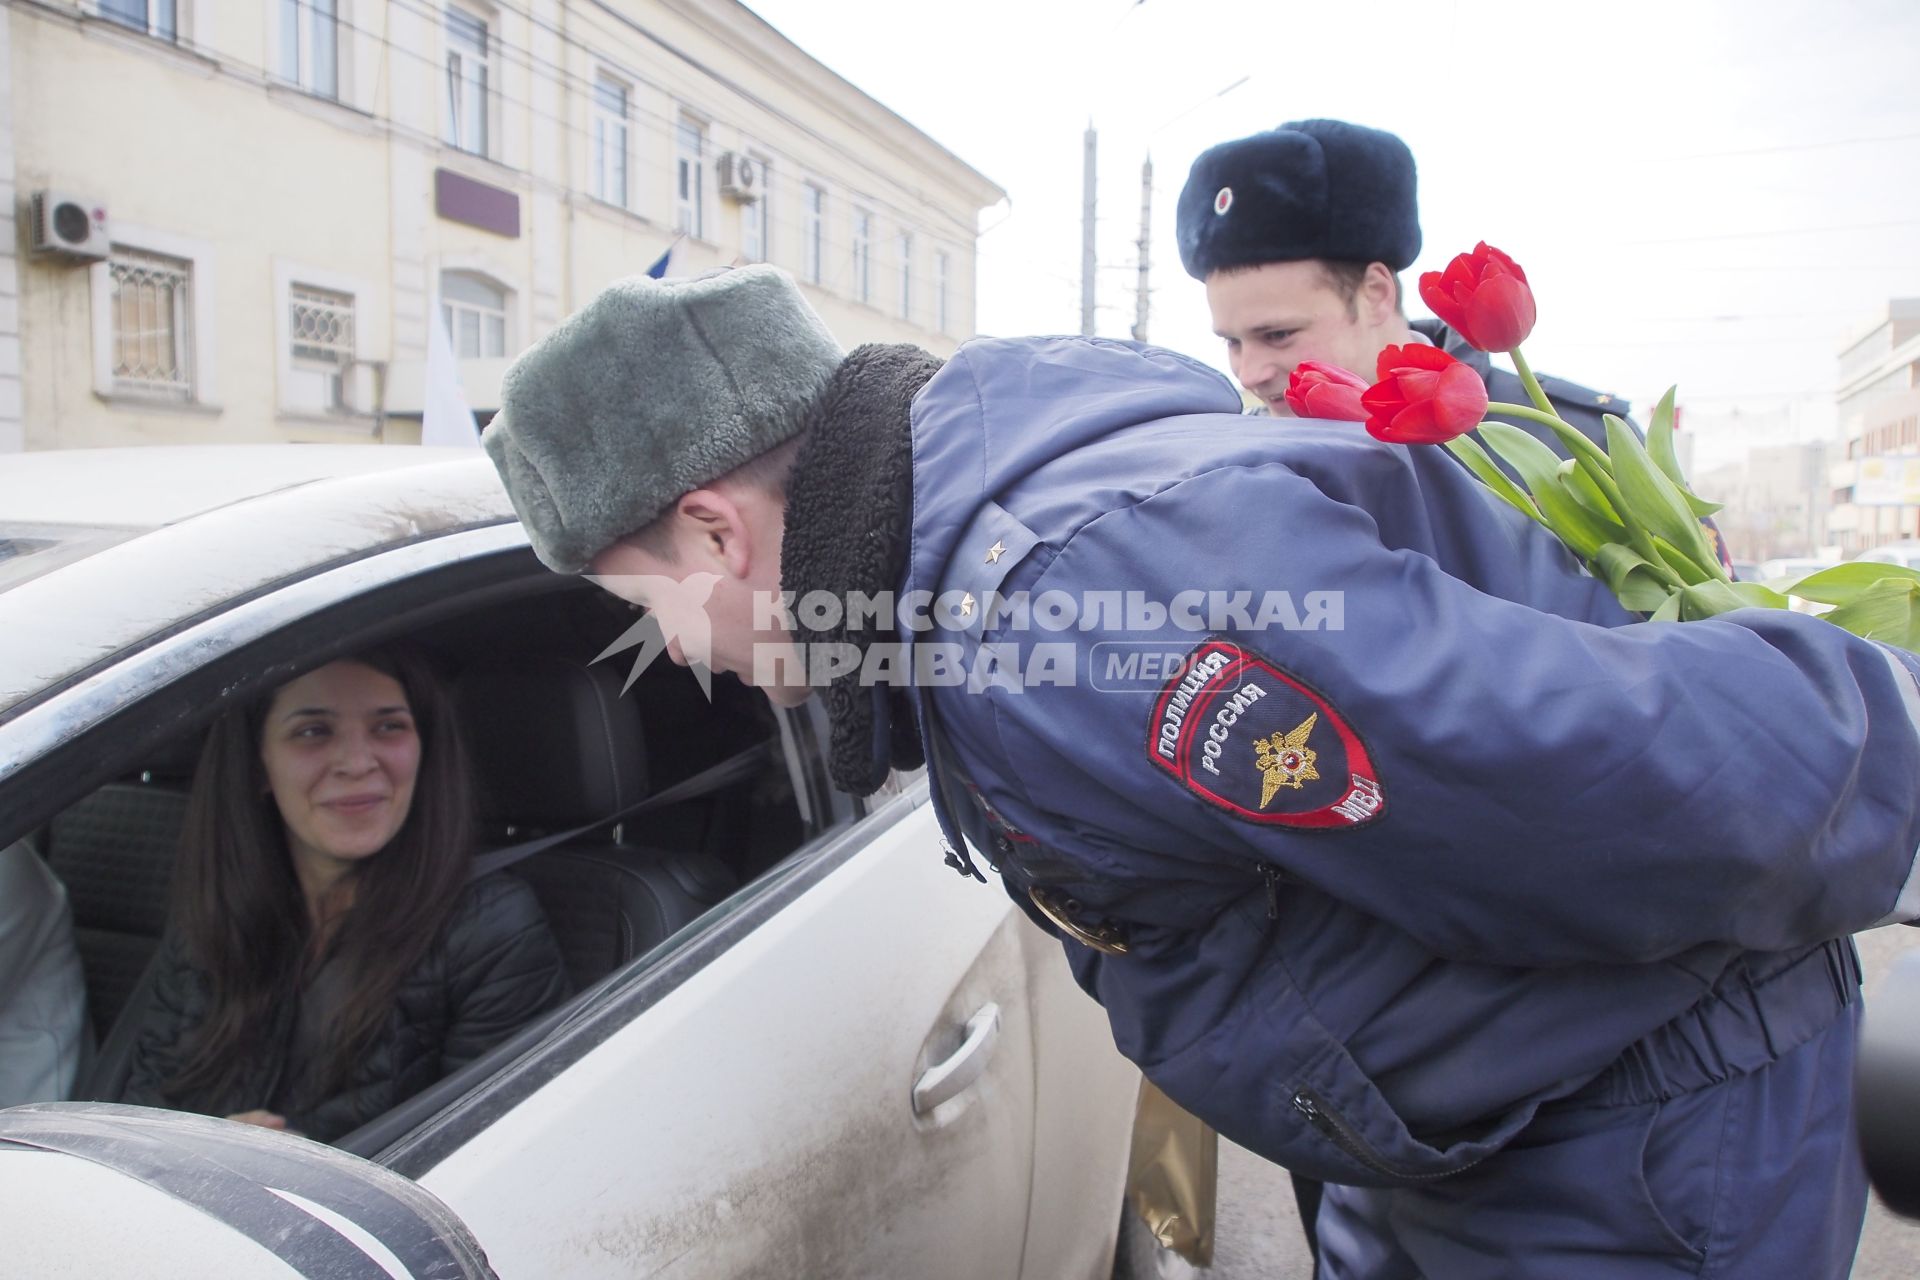 Тула. Сотрудники ГИБДД в преддверии 8 марта поздравляют женщин-водителей цветами.